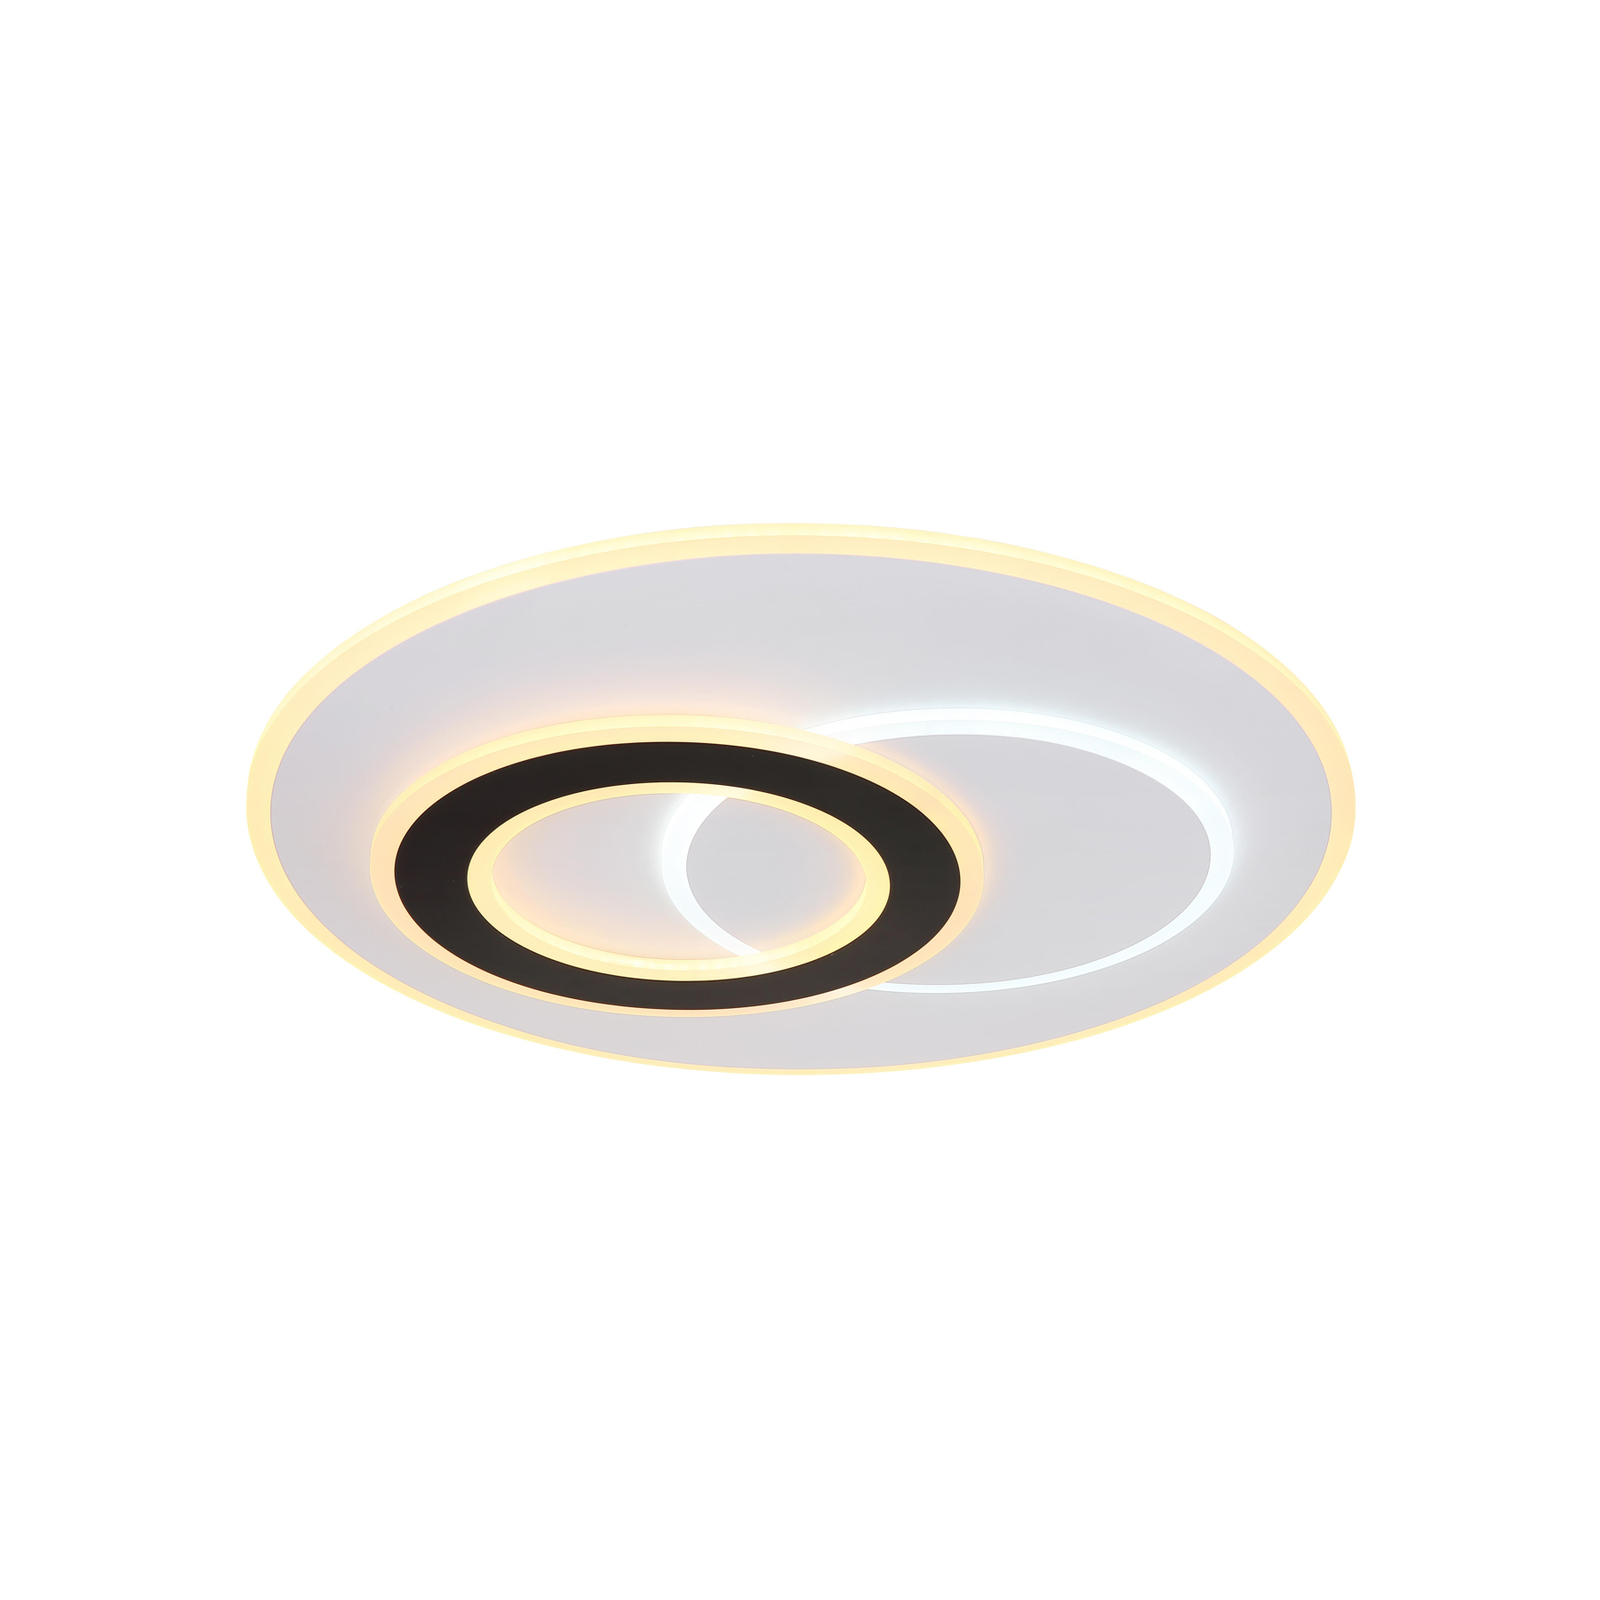 Smart LED-taklampa Jacques, vit/svart, Ø 70 cm, CCT